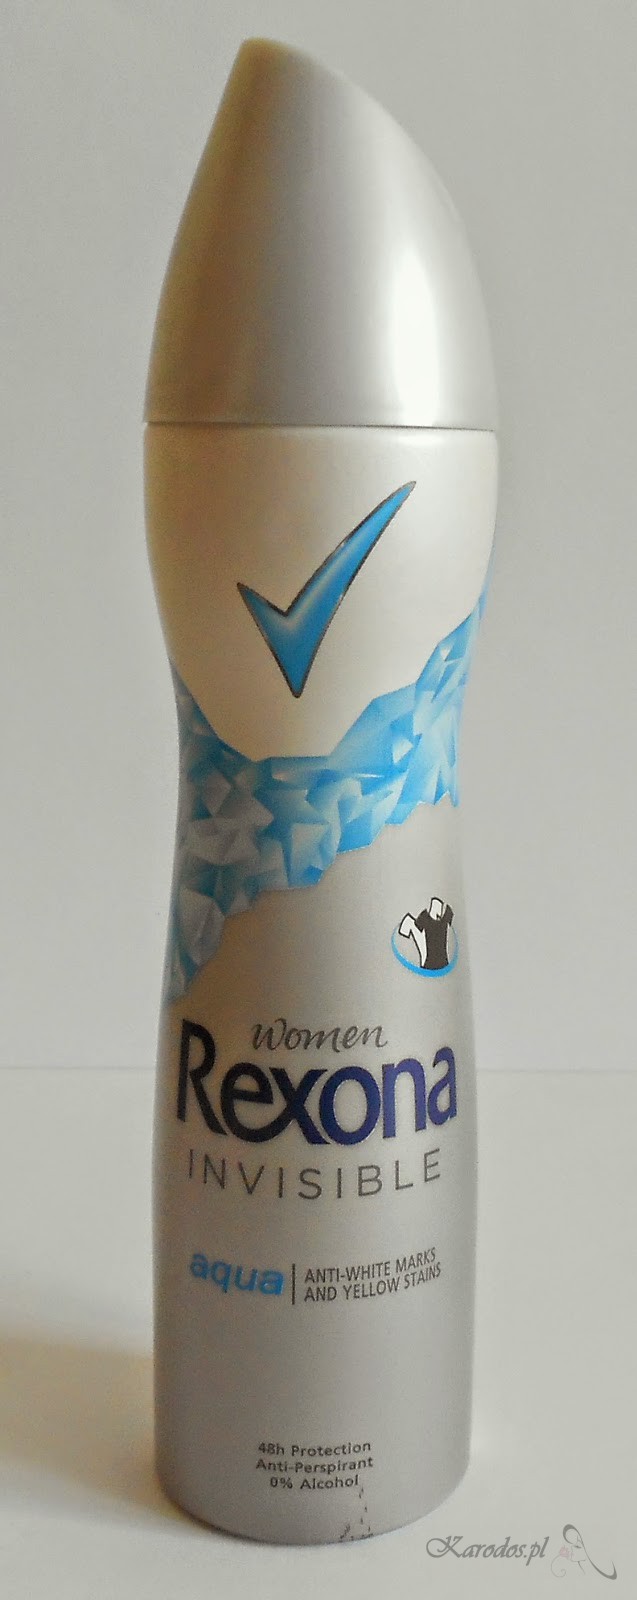 Rexona Women, Invisible Aqua – Dezodorant antyperspiracyjny w sprayu - ulubieniec